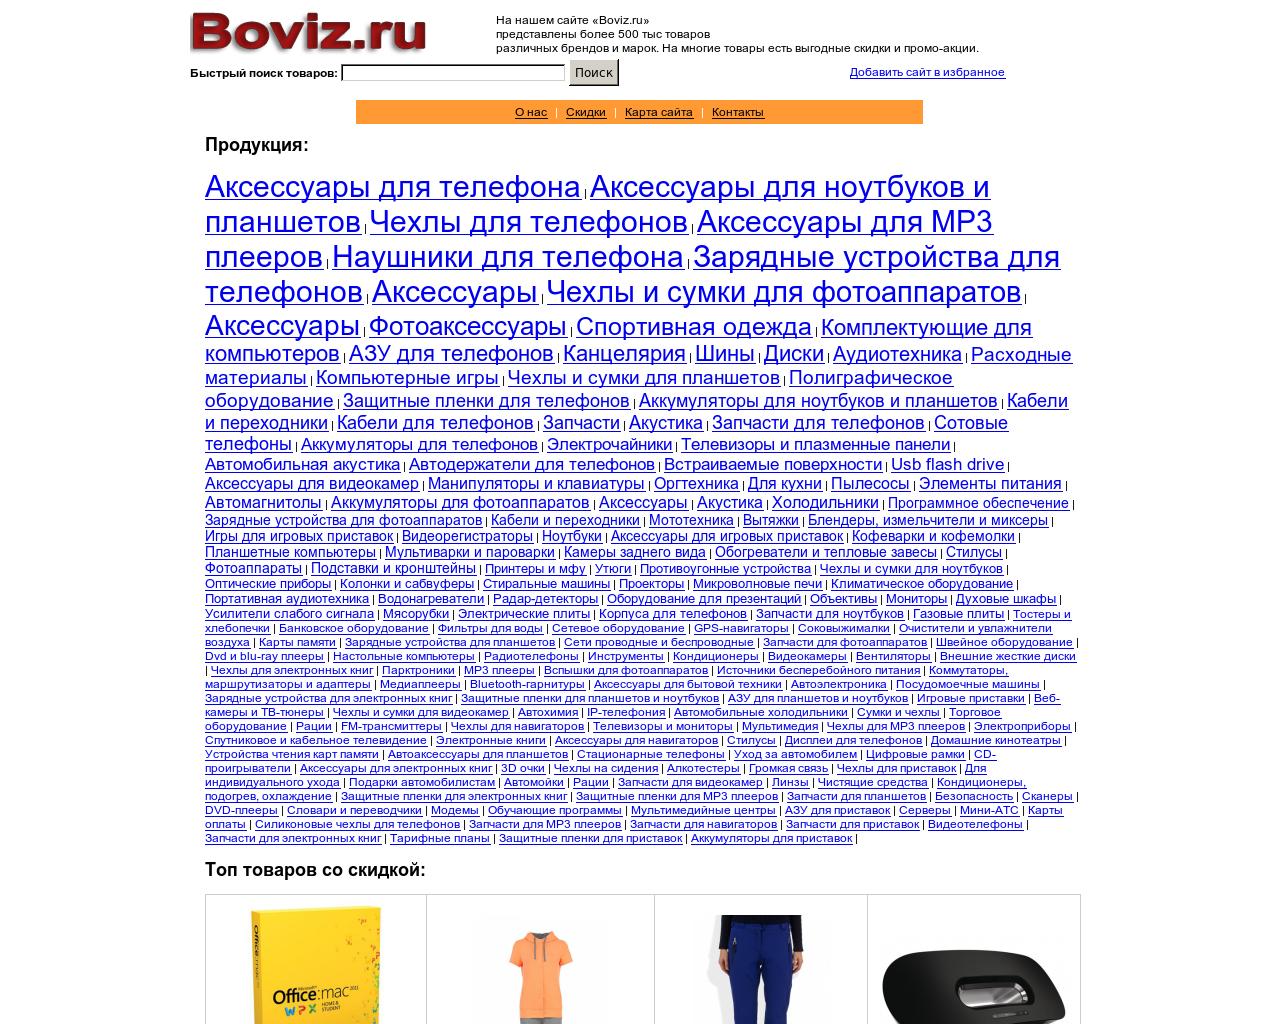 Изображение сайта boviz.ru в разрешении 1280x1024